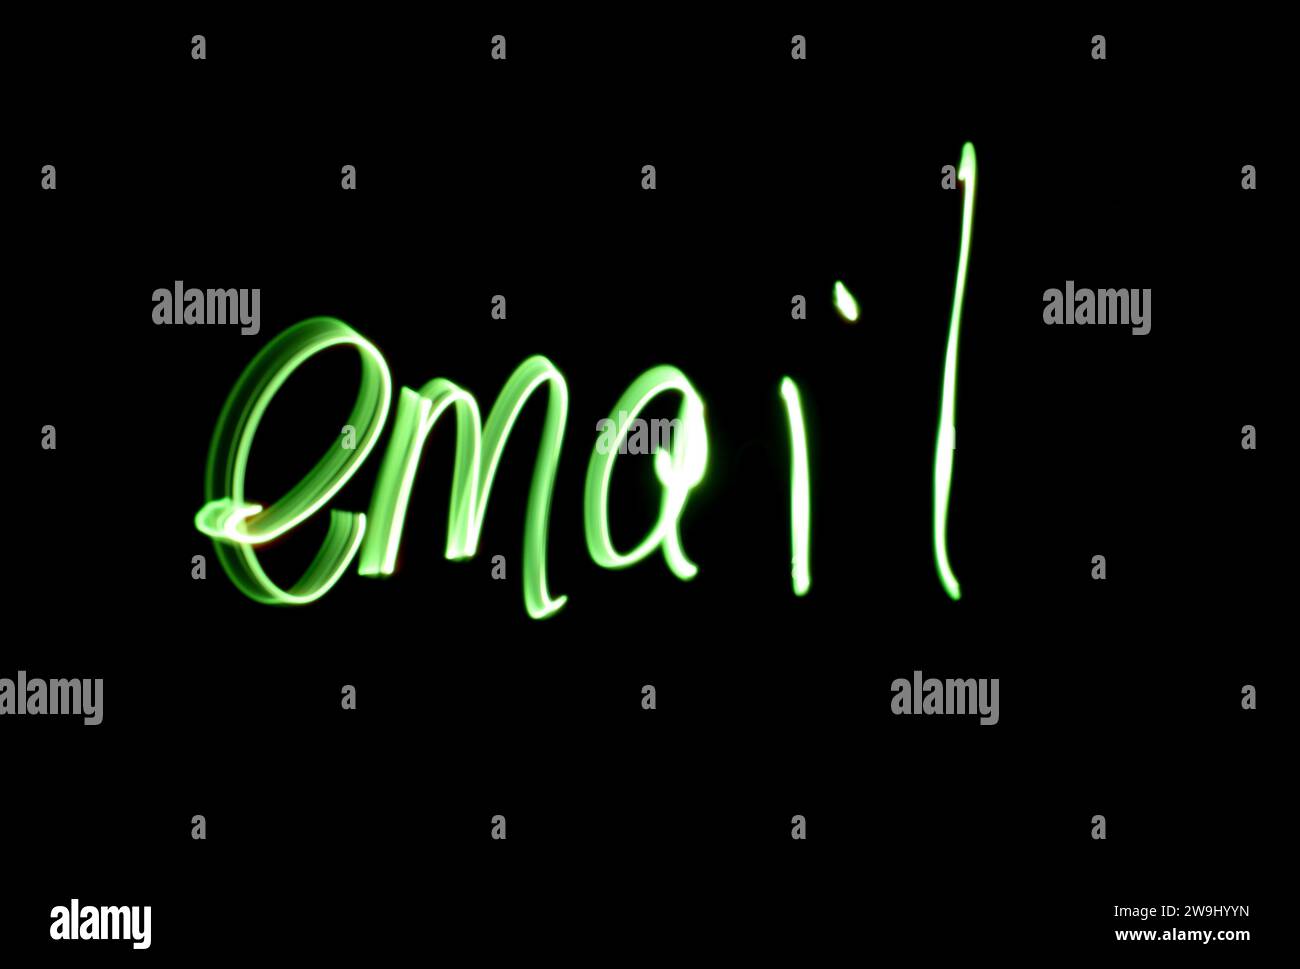 Una fotografia della parola "e-mail", scritta con una luce verde brillante in una foto a lunga esposizione su sfondo nero. Fotografia di pittura leggera Foto Stock